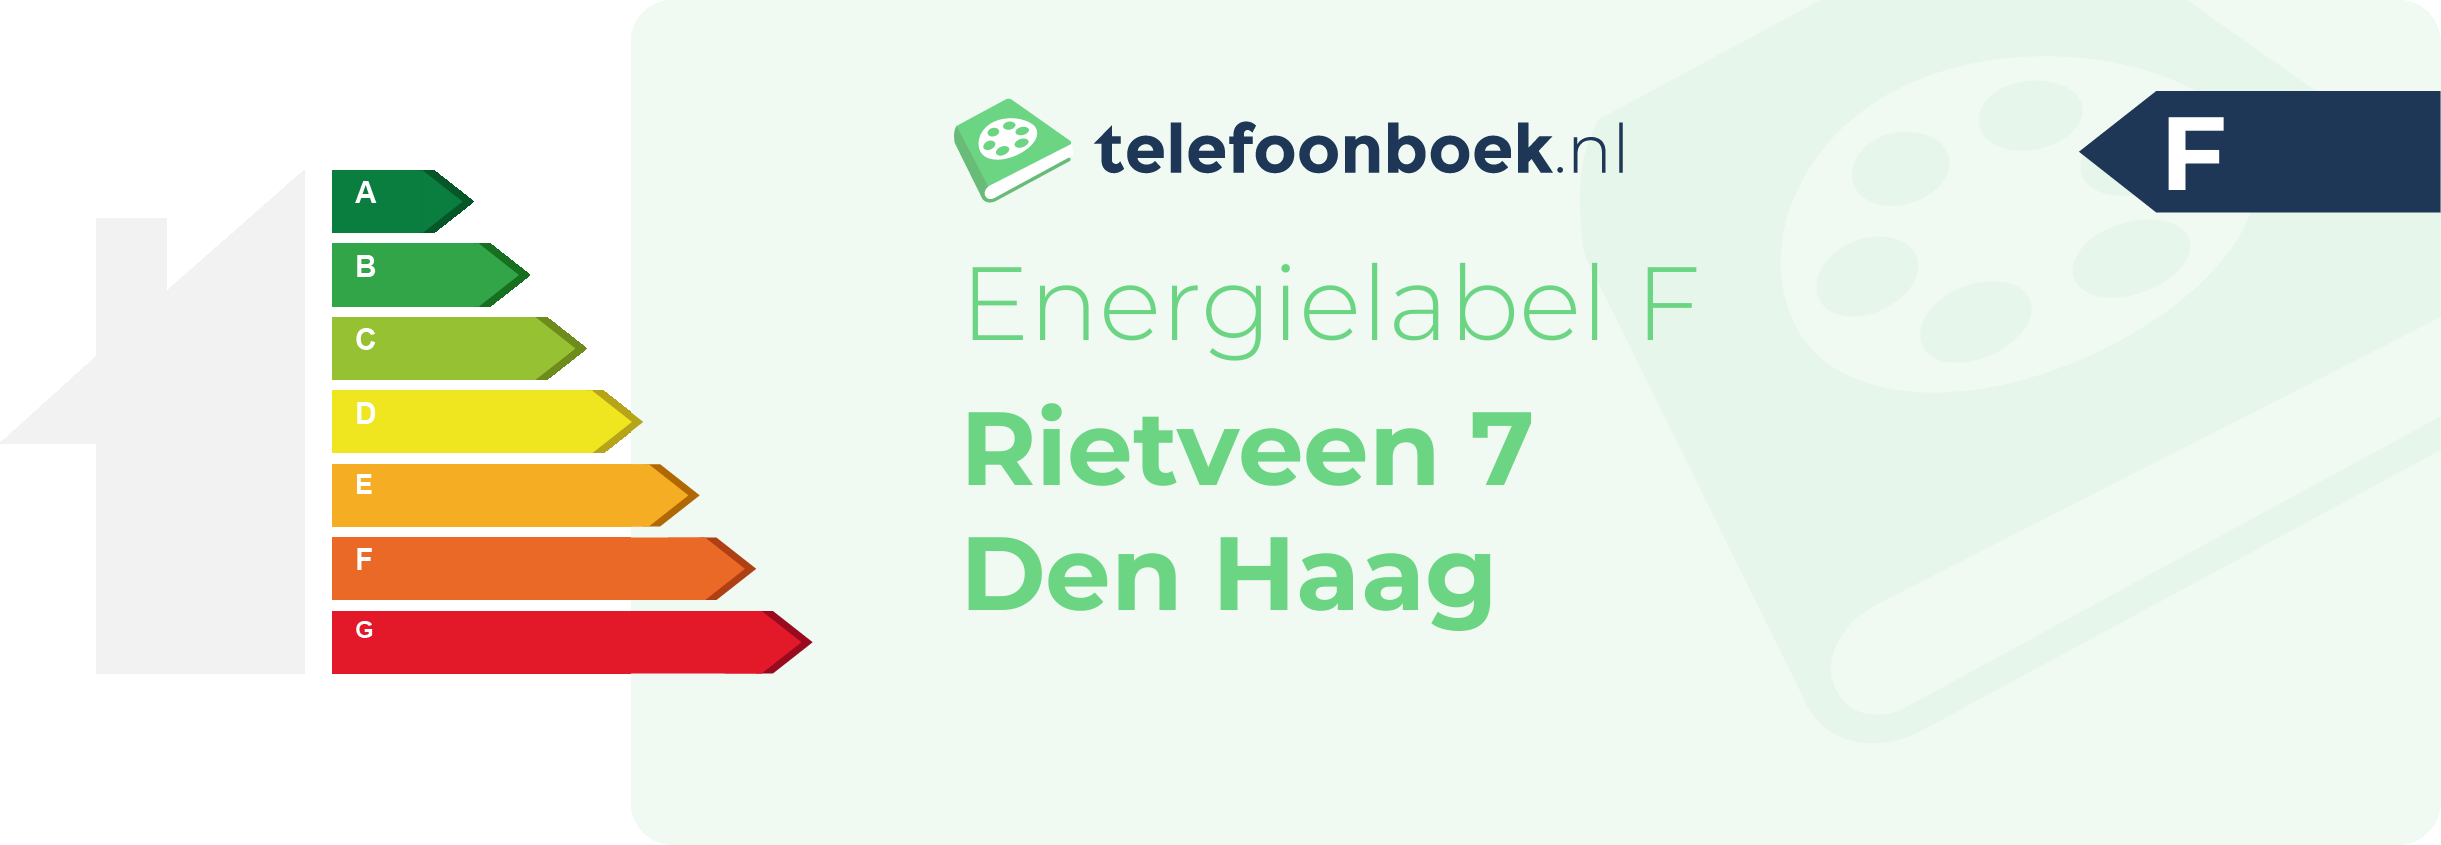 Energielabel Rietveen 7 Den Haag